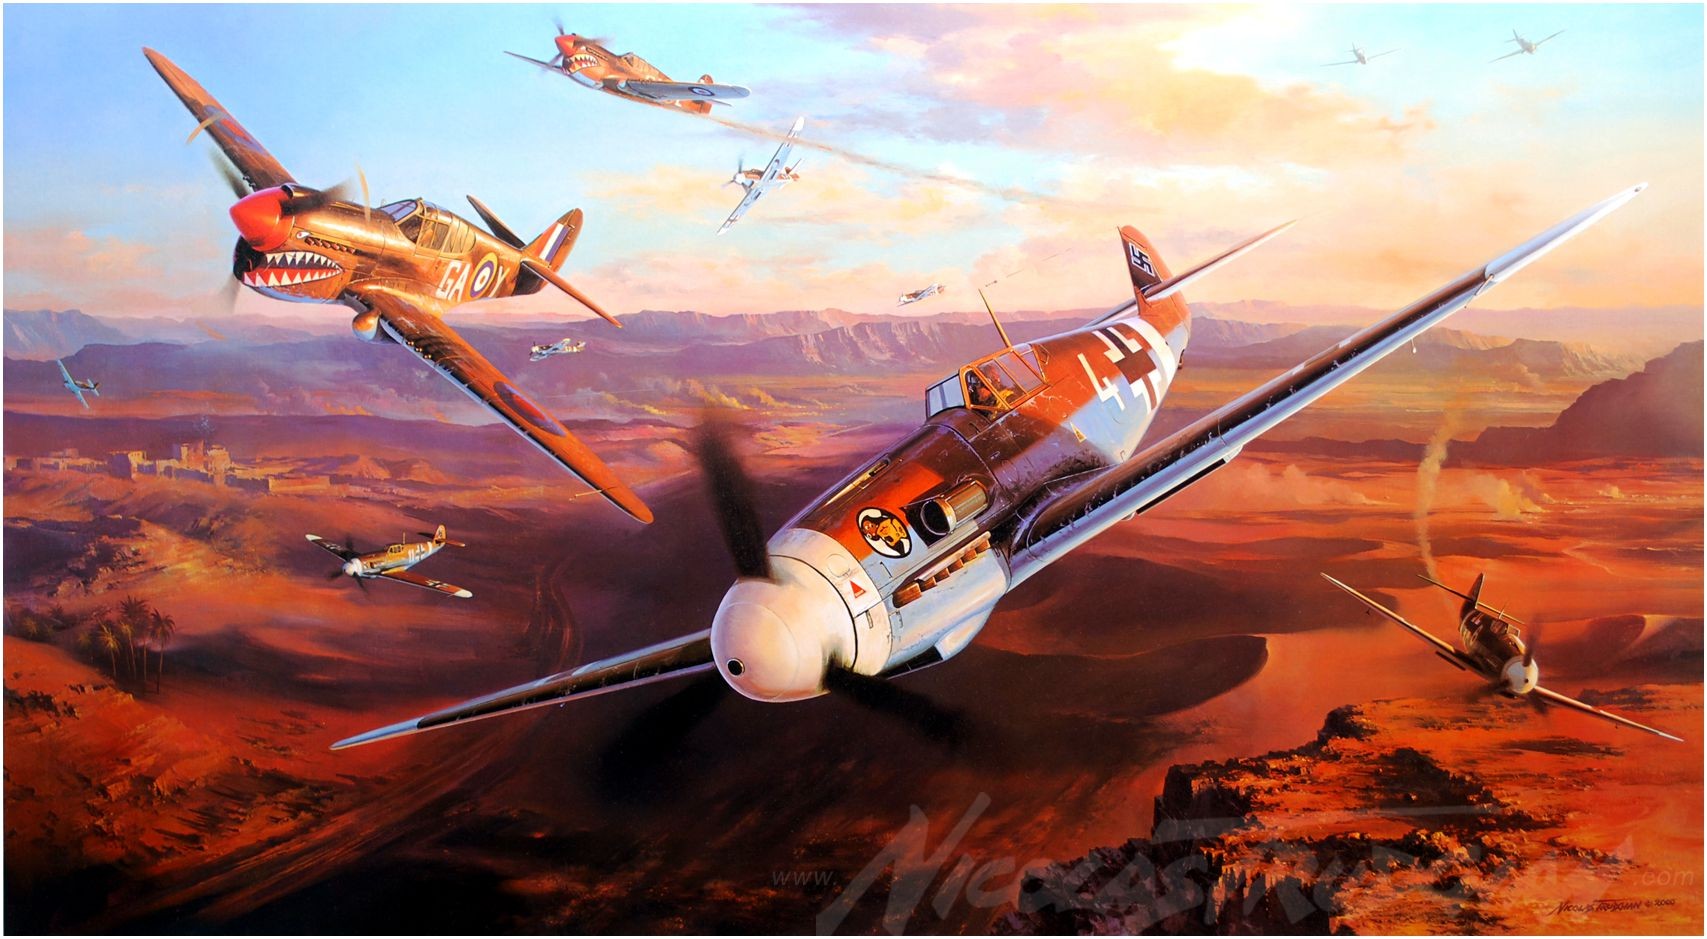 Messerschmitt, Messerschmitt Bf 109, World War II, Germany, Military, Aircraft, Military Aircraft, Luftwaffe, Airplane, Kittyhawk, Curtiss P 40 Warhawk Wallpaper